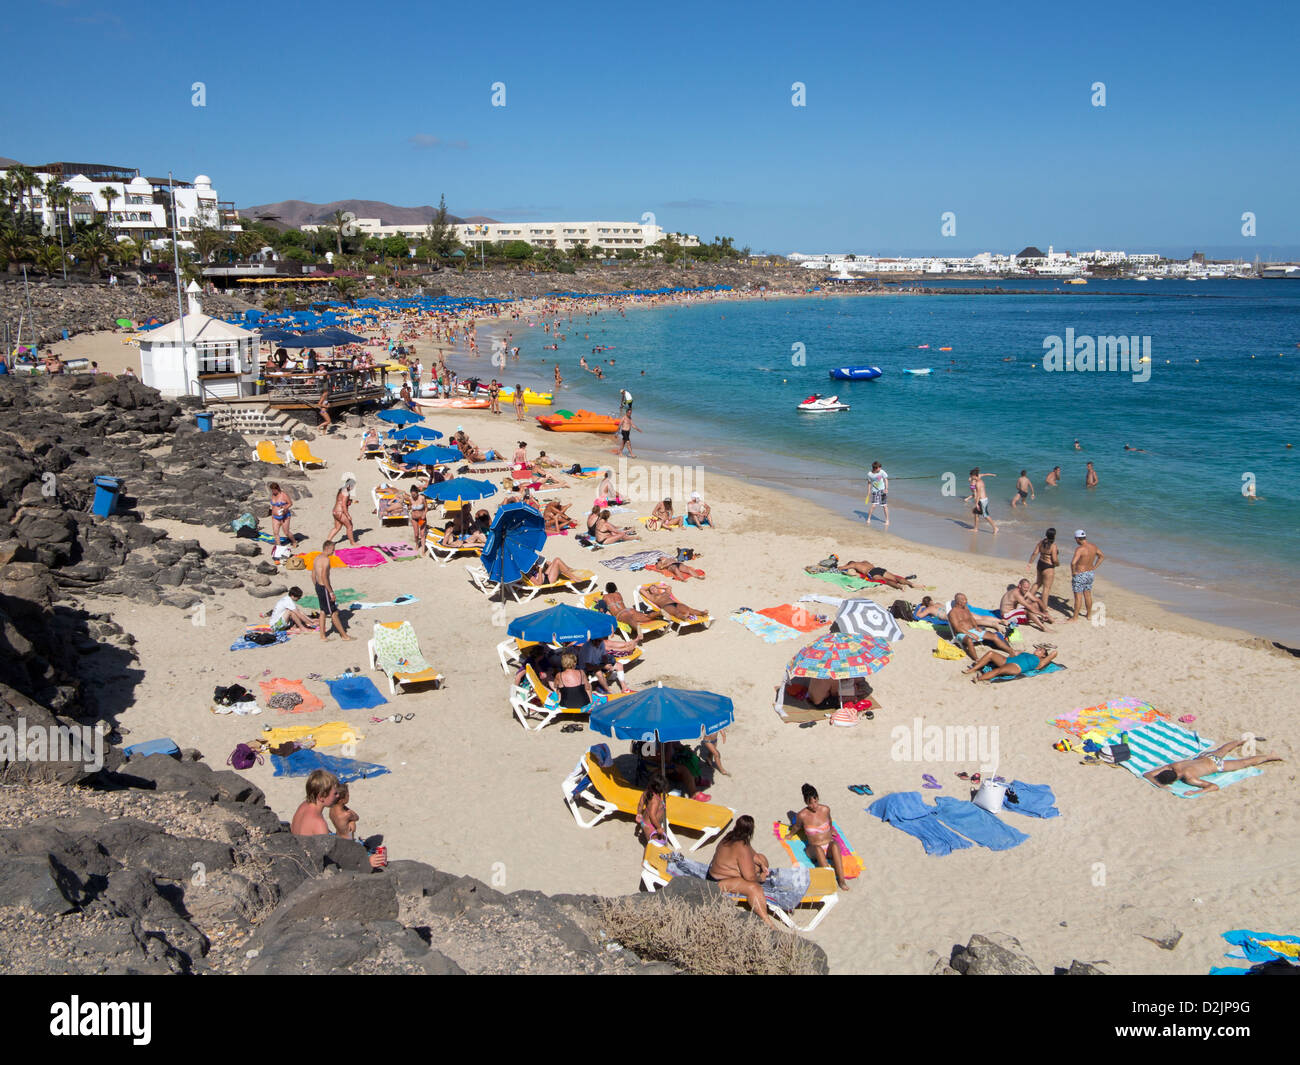 Strand Playa Dorada, Playa Blanca, Lanzarote Stockfoto